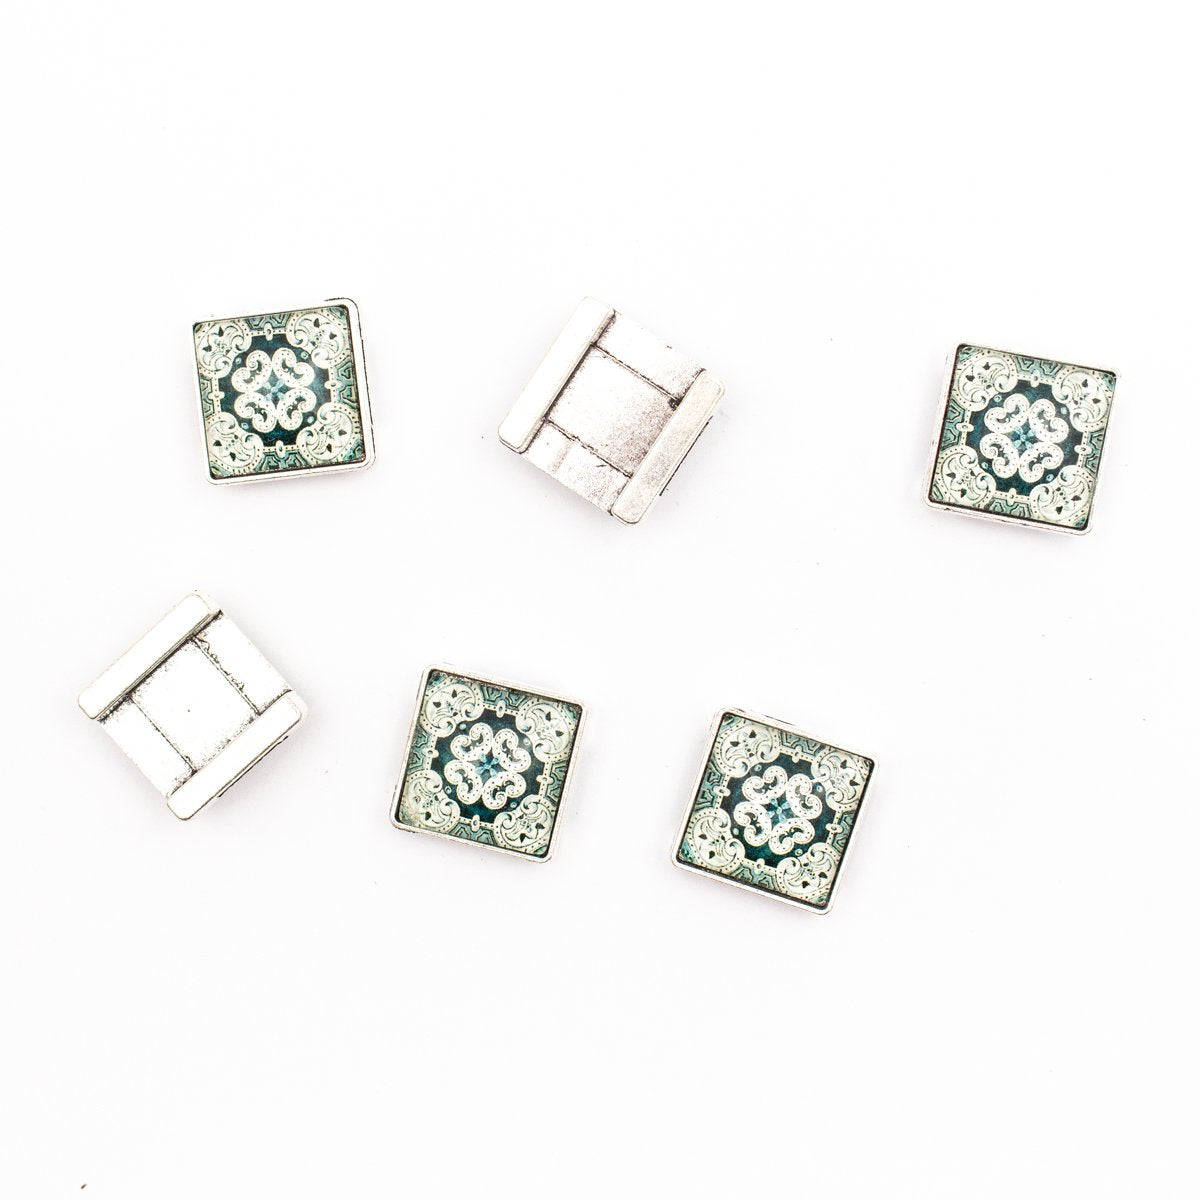 10 unités pour curseur de cordon plat de 10 mm avec carreaux portugais carrés pour la recherche de bracelets (22 mm x 22 mm) D-1-10-218